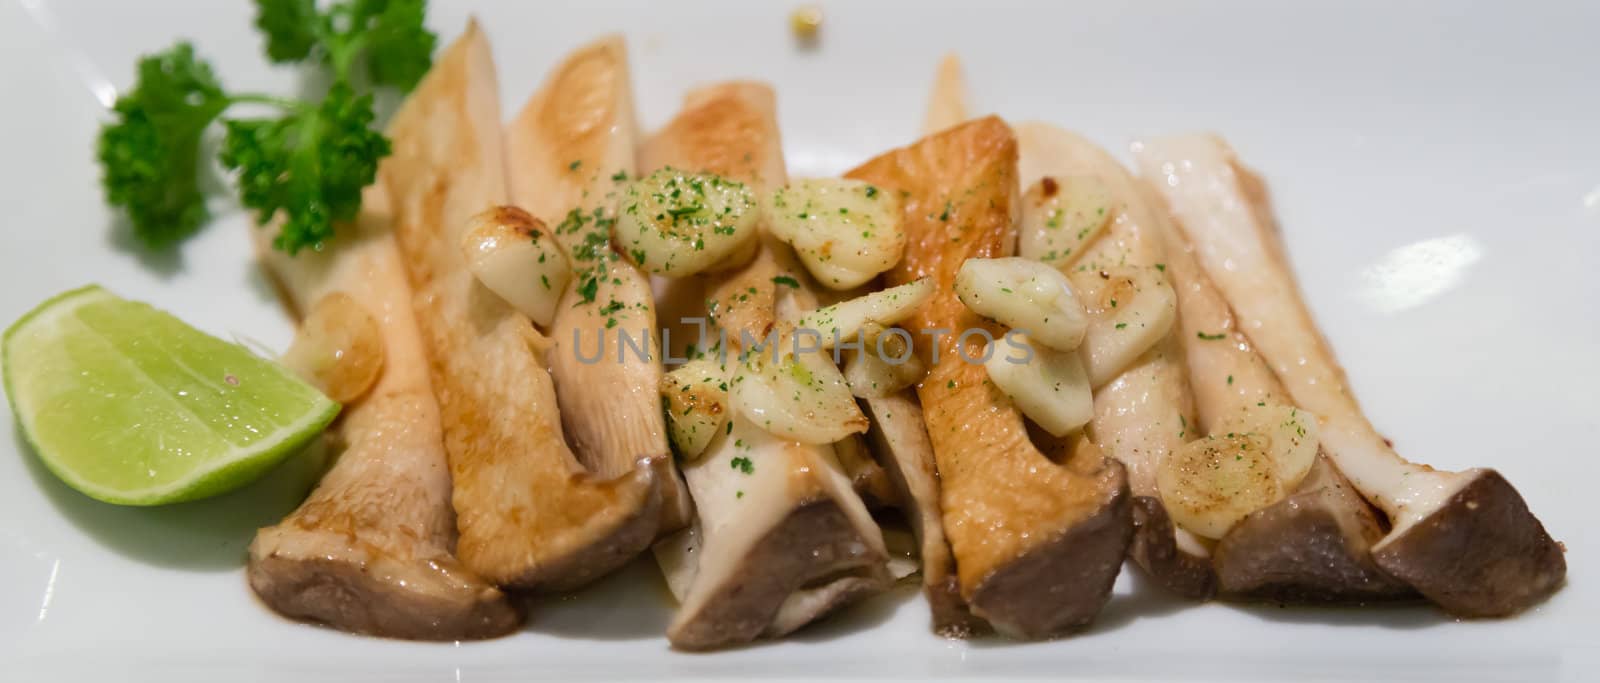 eringi garlic itame japanese food by moggara12